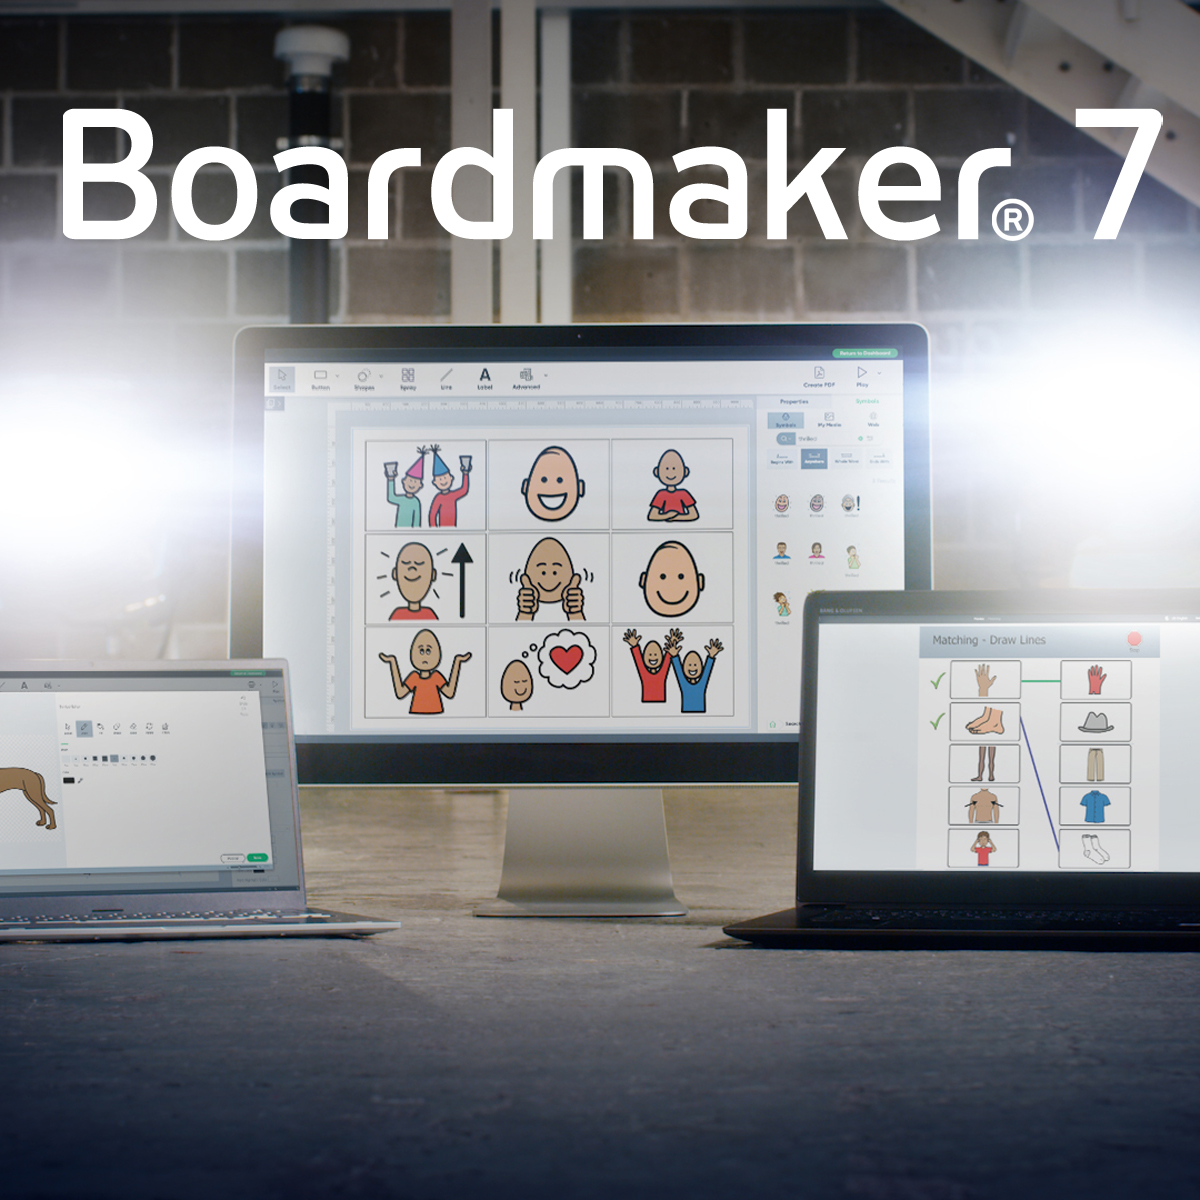 Boardmaker 7